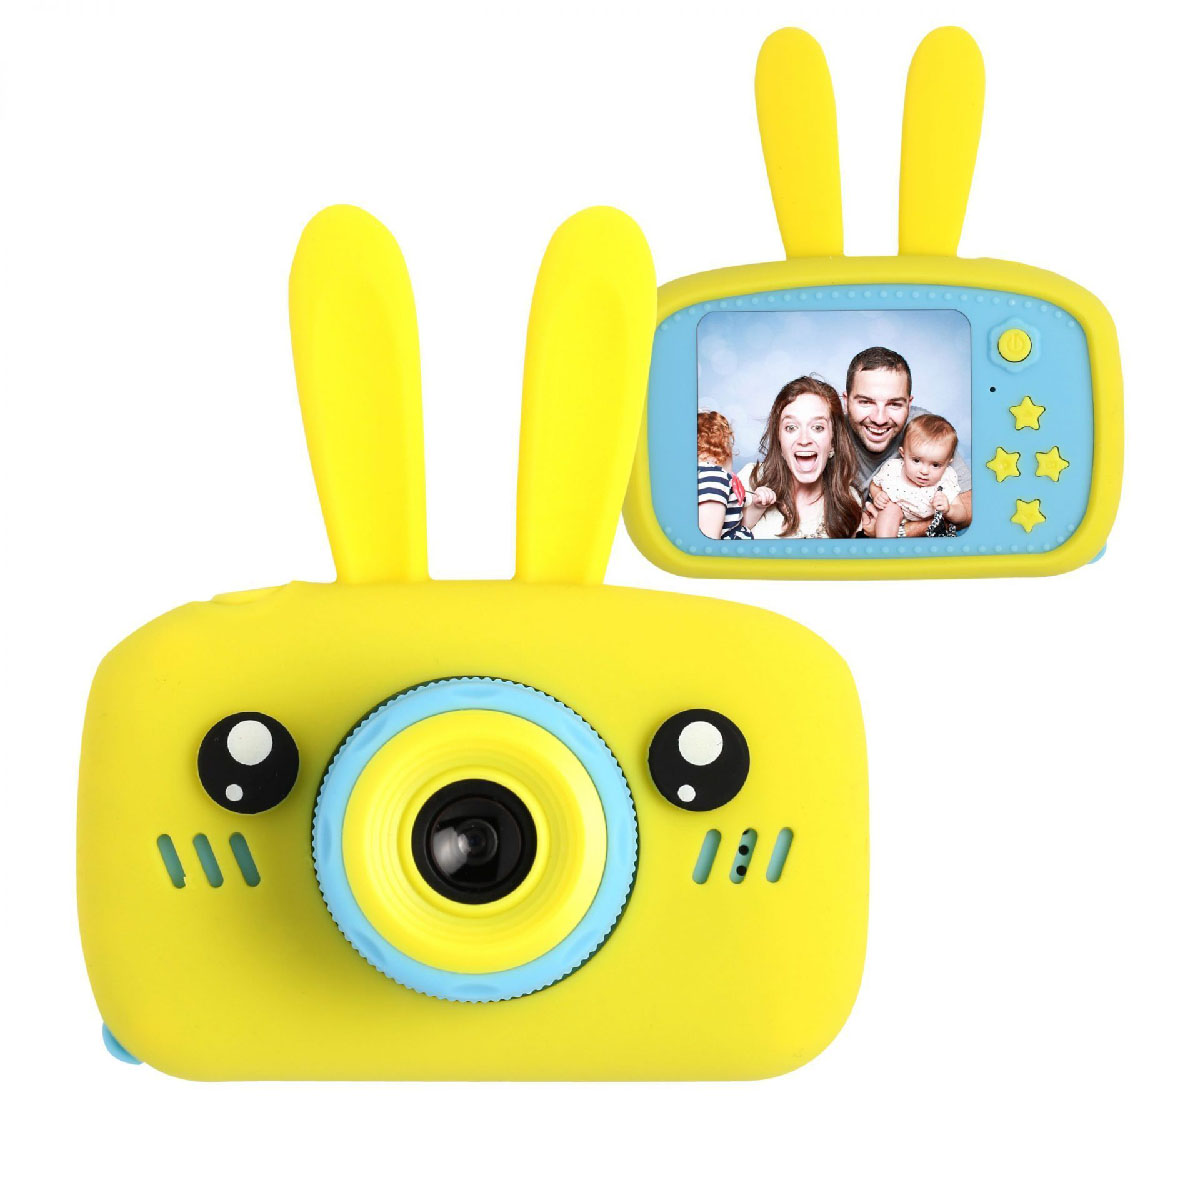 Детский цифровой фотоаппарат (игрушка), портативный, Зайчик, цвет желтый